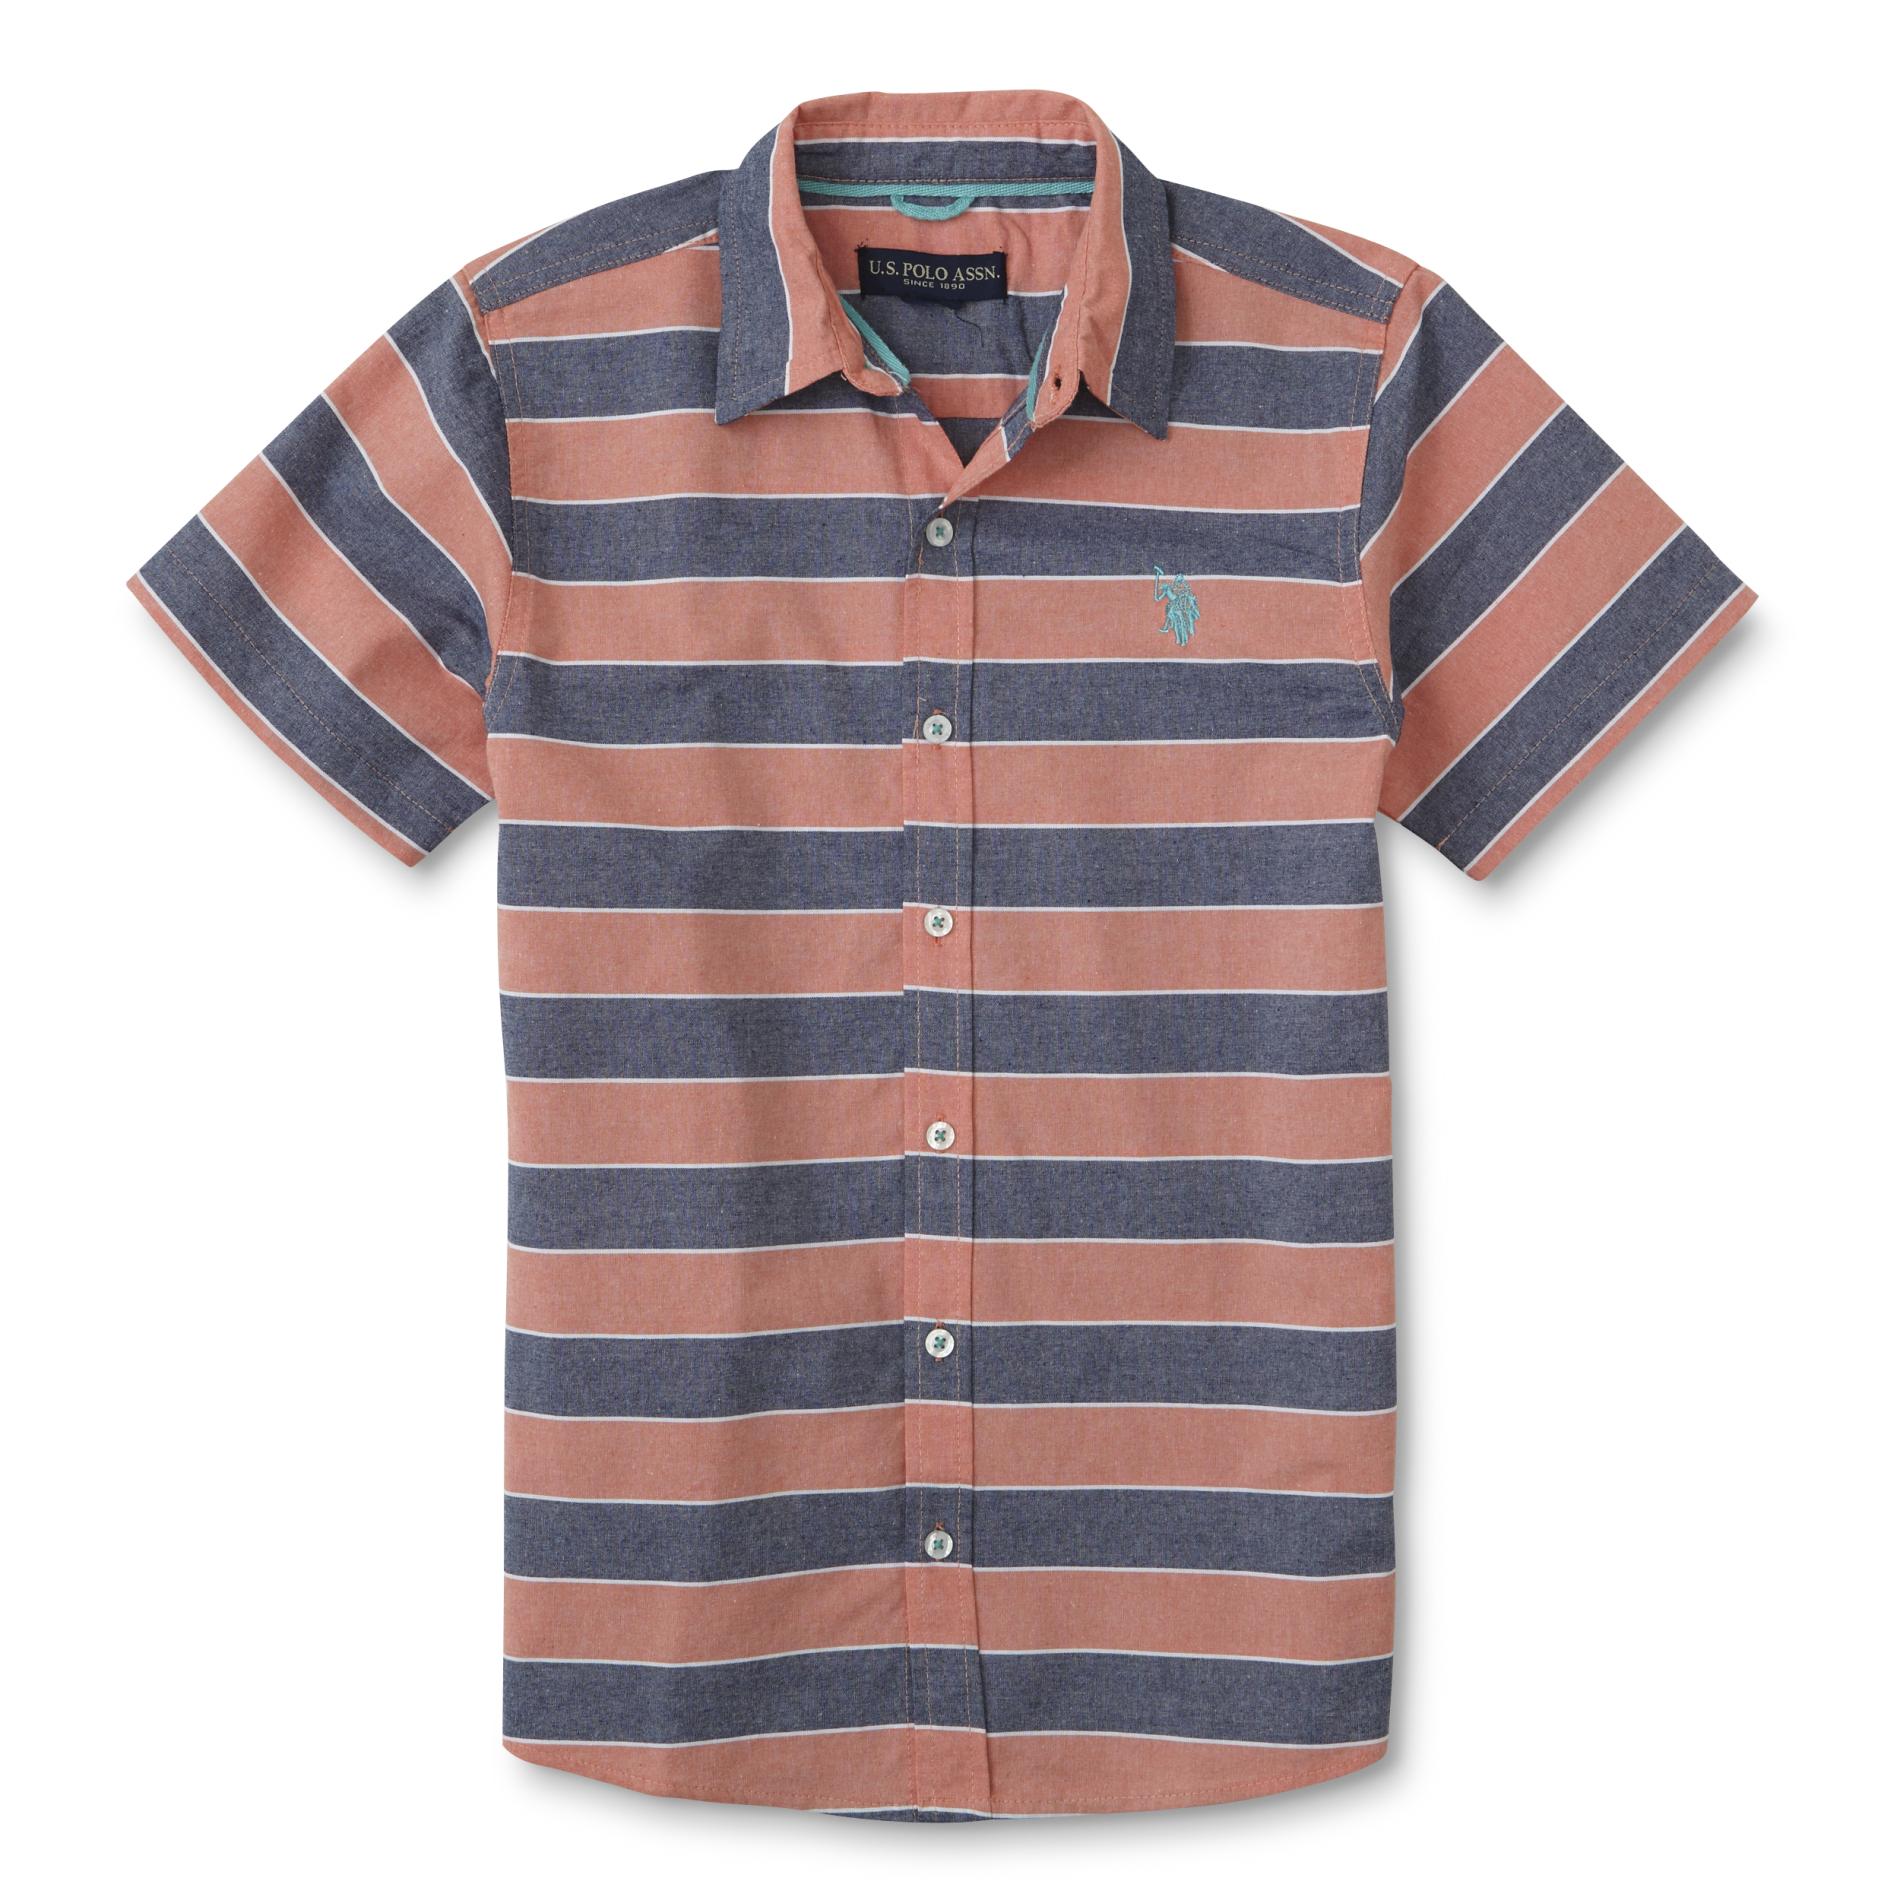 U.S. Polo Assn. Boys' Button-Front Shirt - Striped